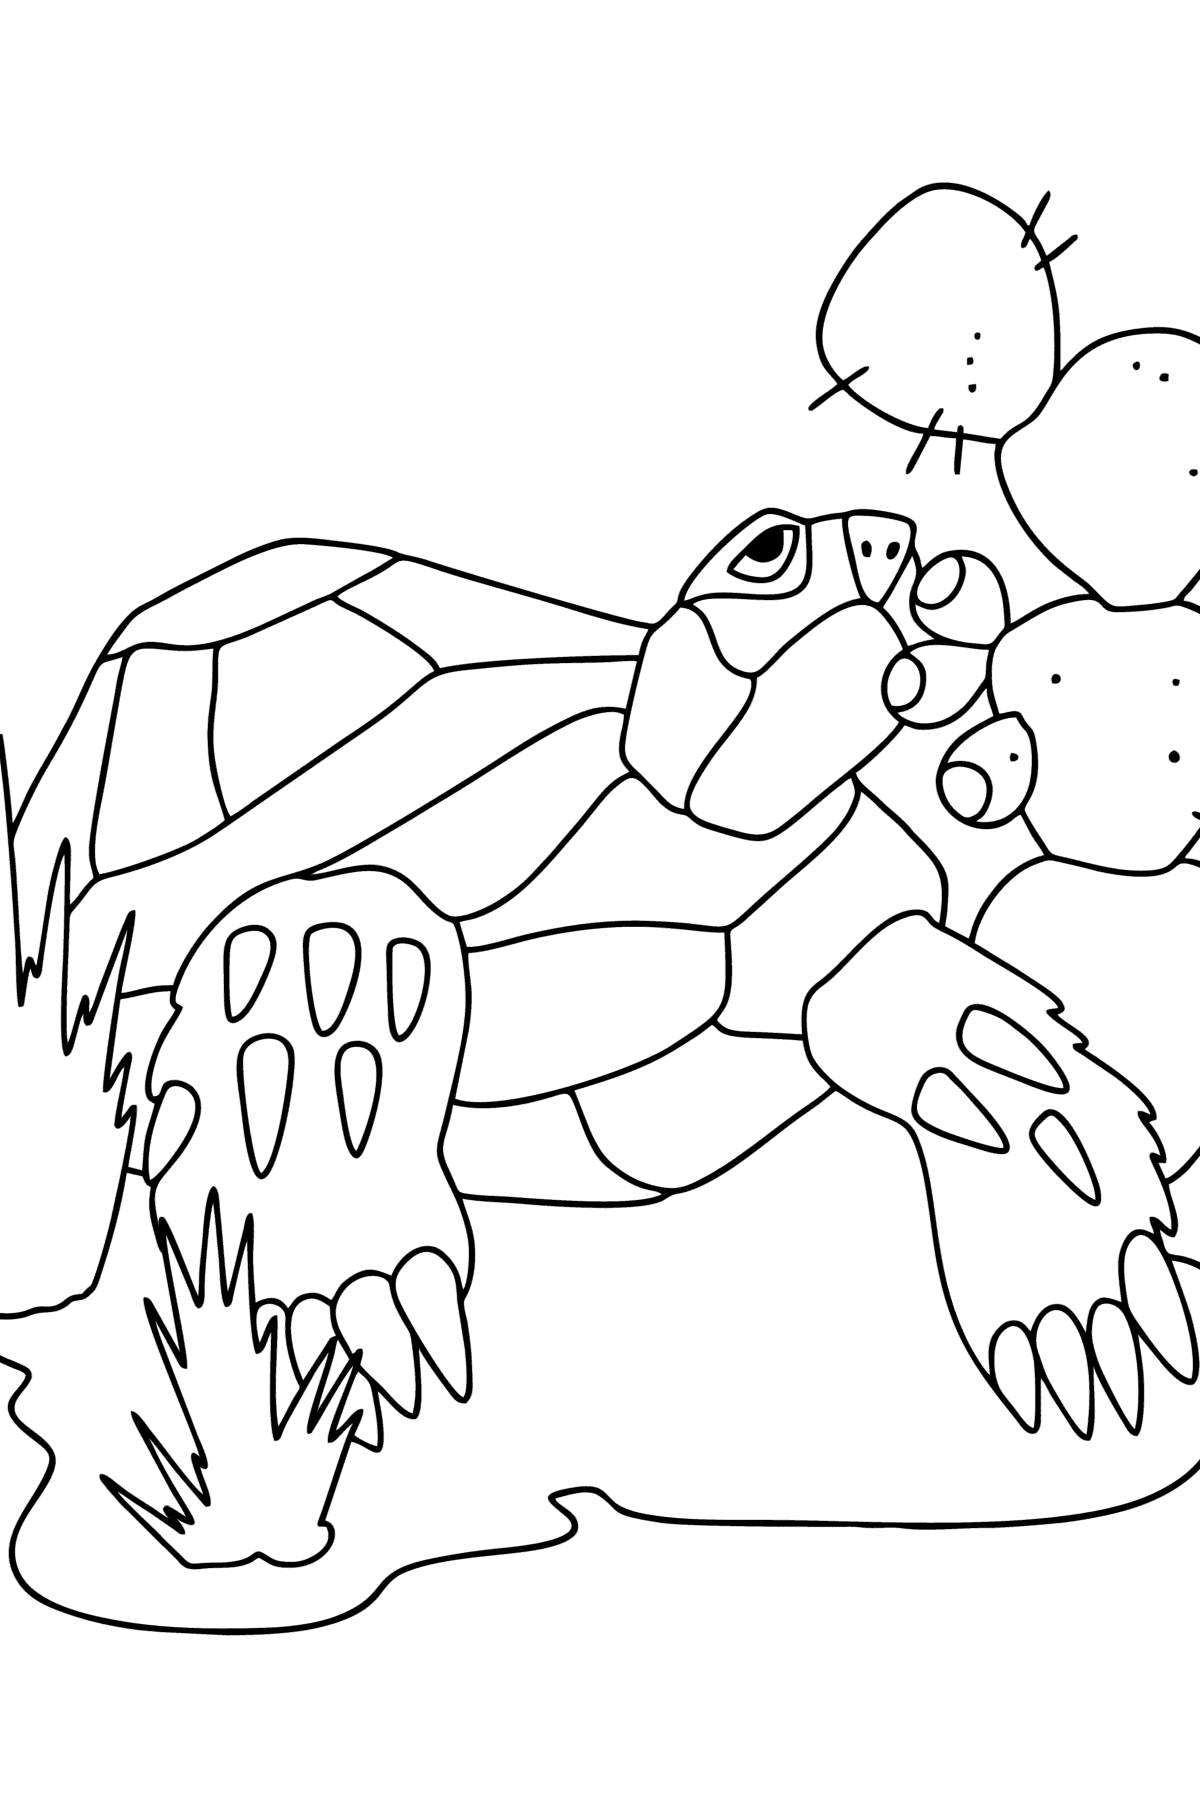 Schildpad in de woestijn kleurplaat - kleurplaten voor kinderen